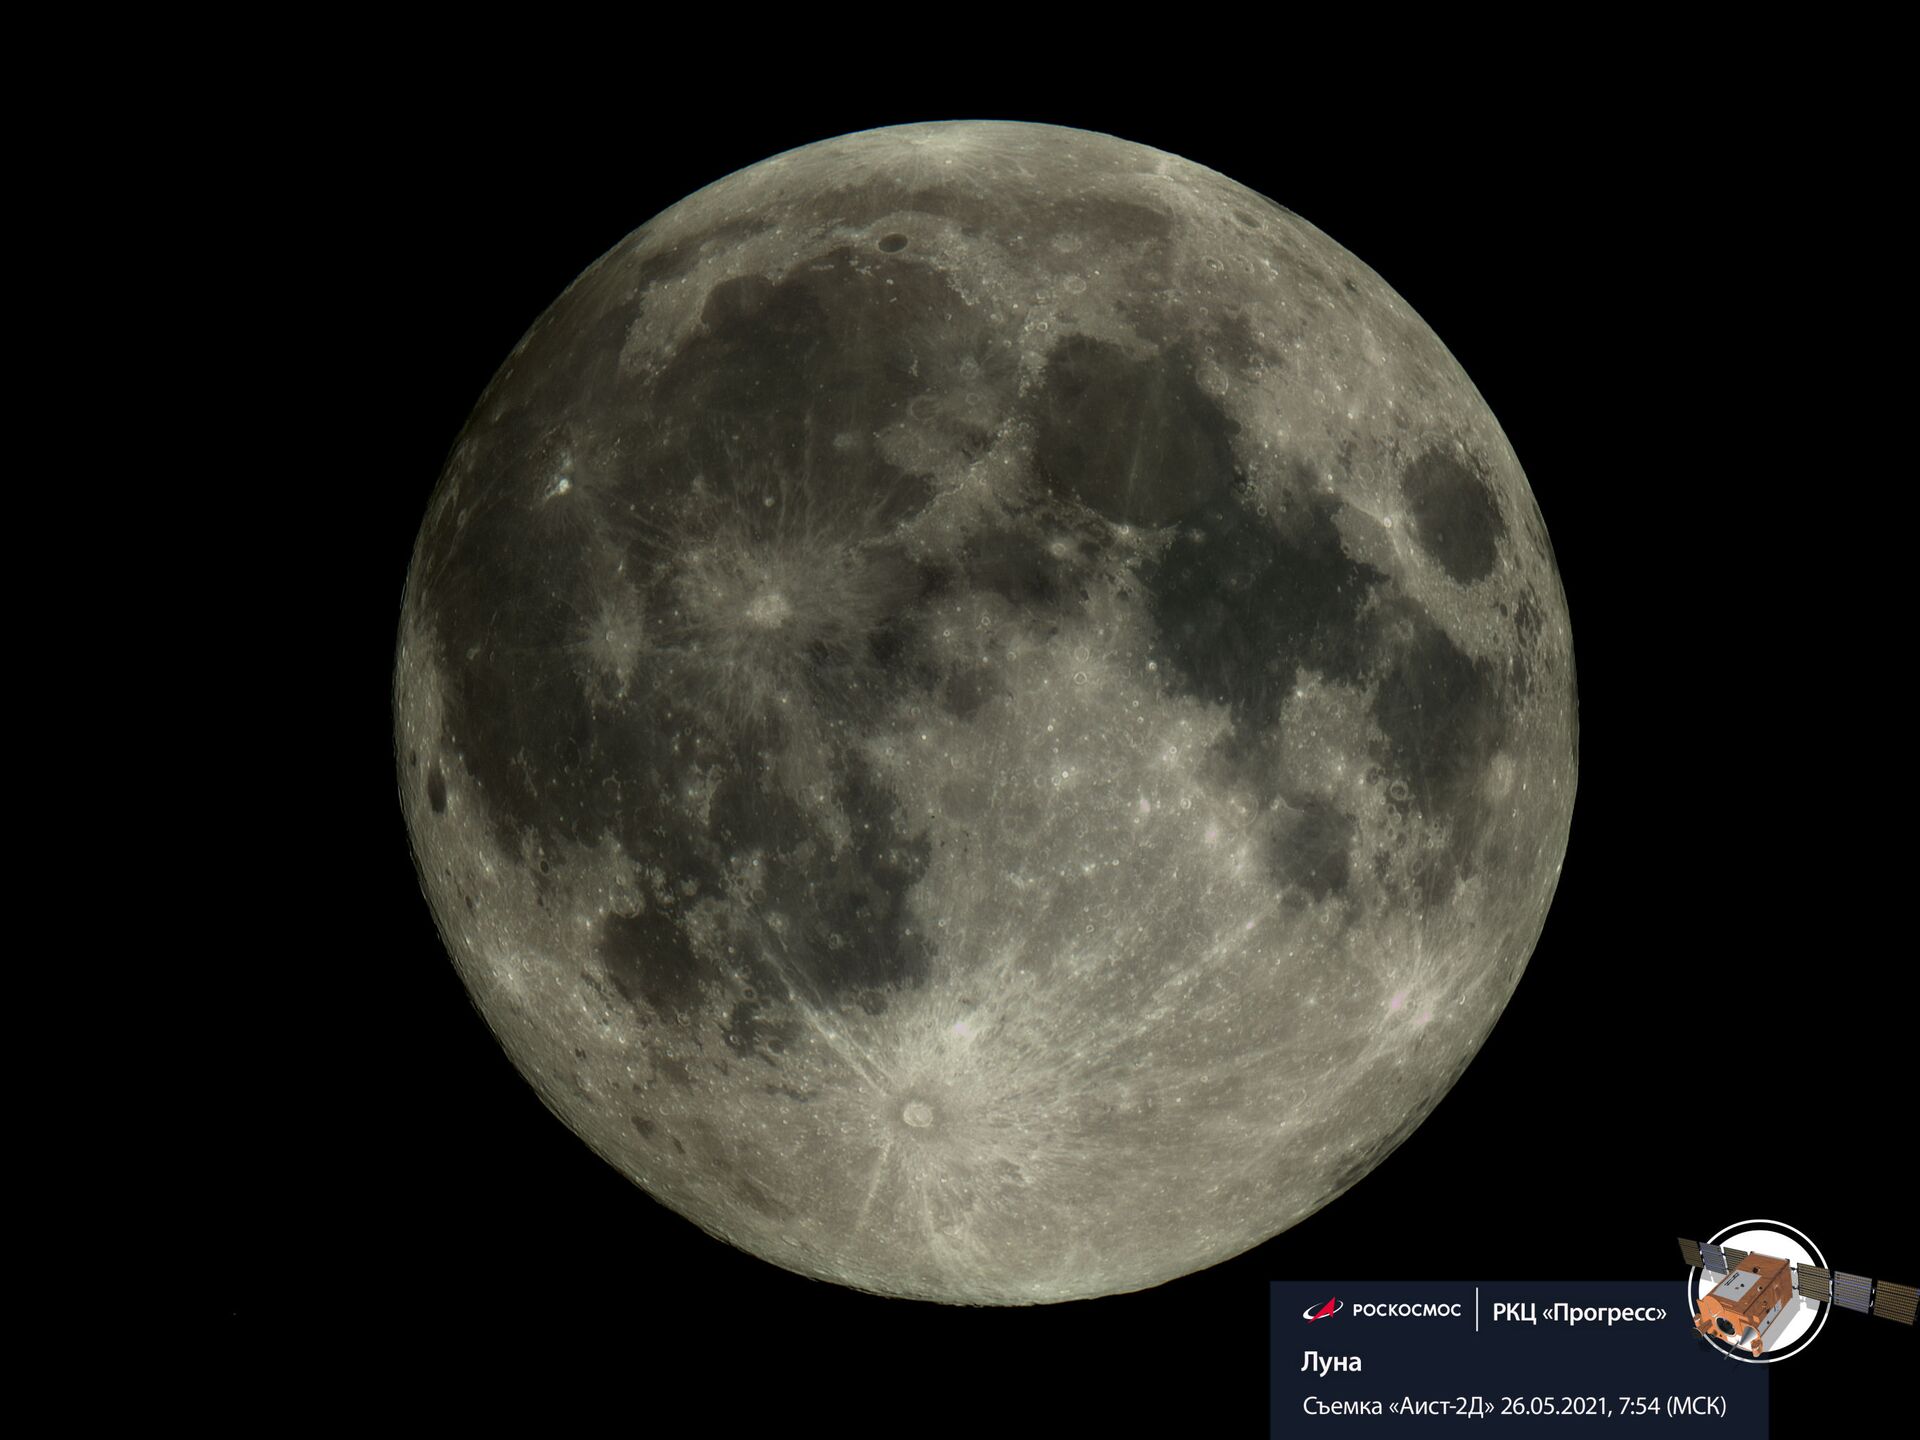 Agência espacial russa publica FOTO da Lua no ponto mais próximo da Terra - Sputnik Brasil, 1920, 26.05.2021